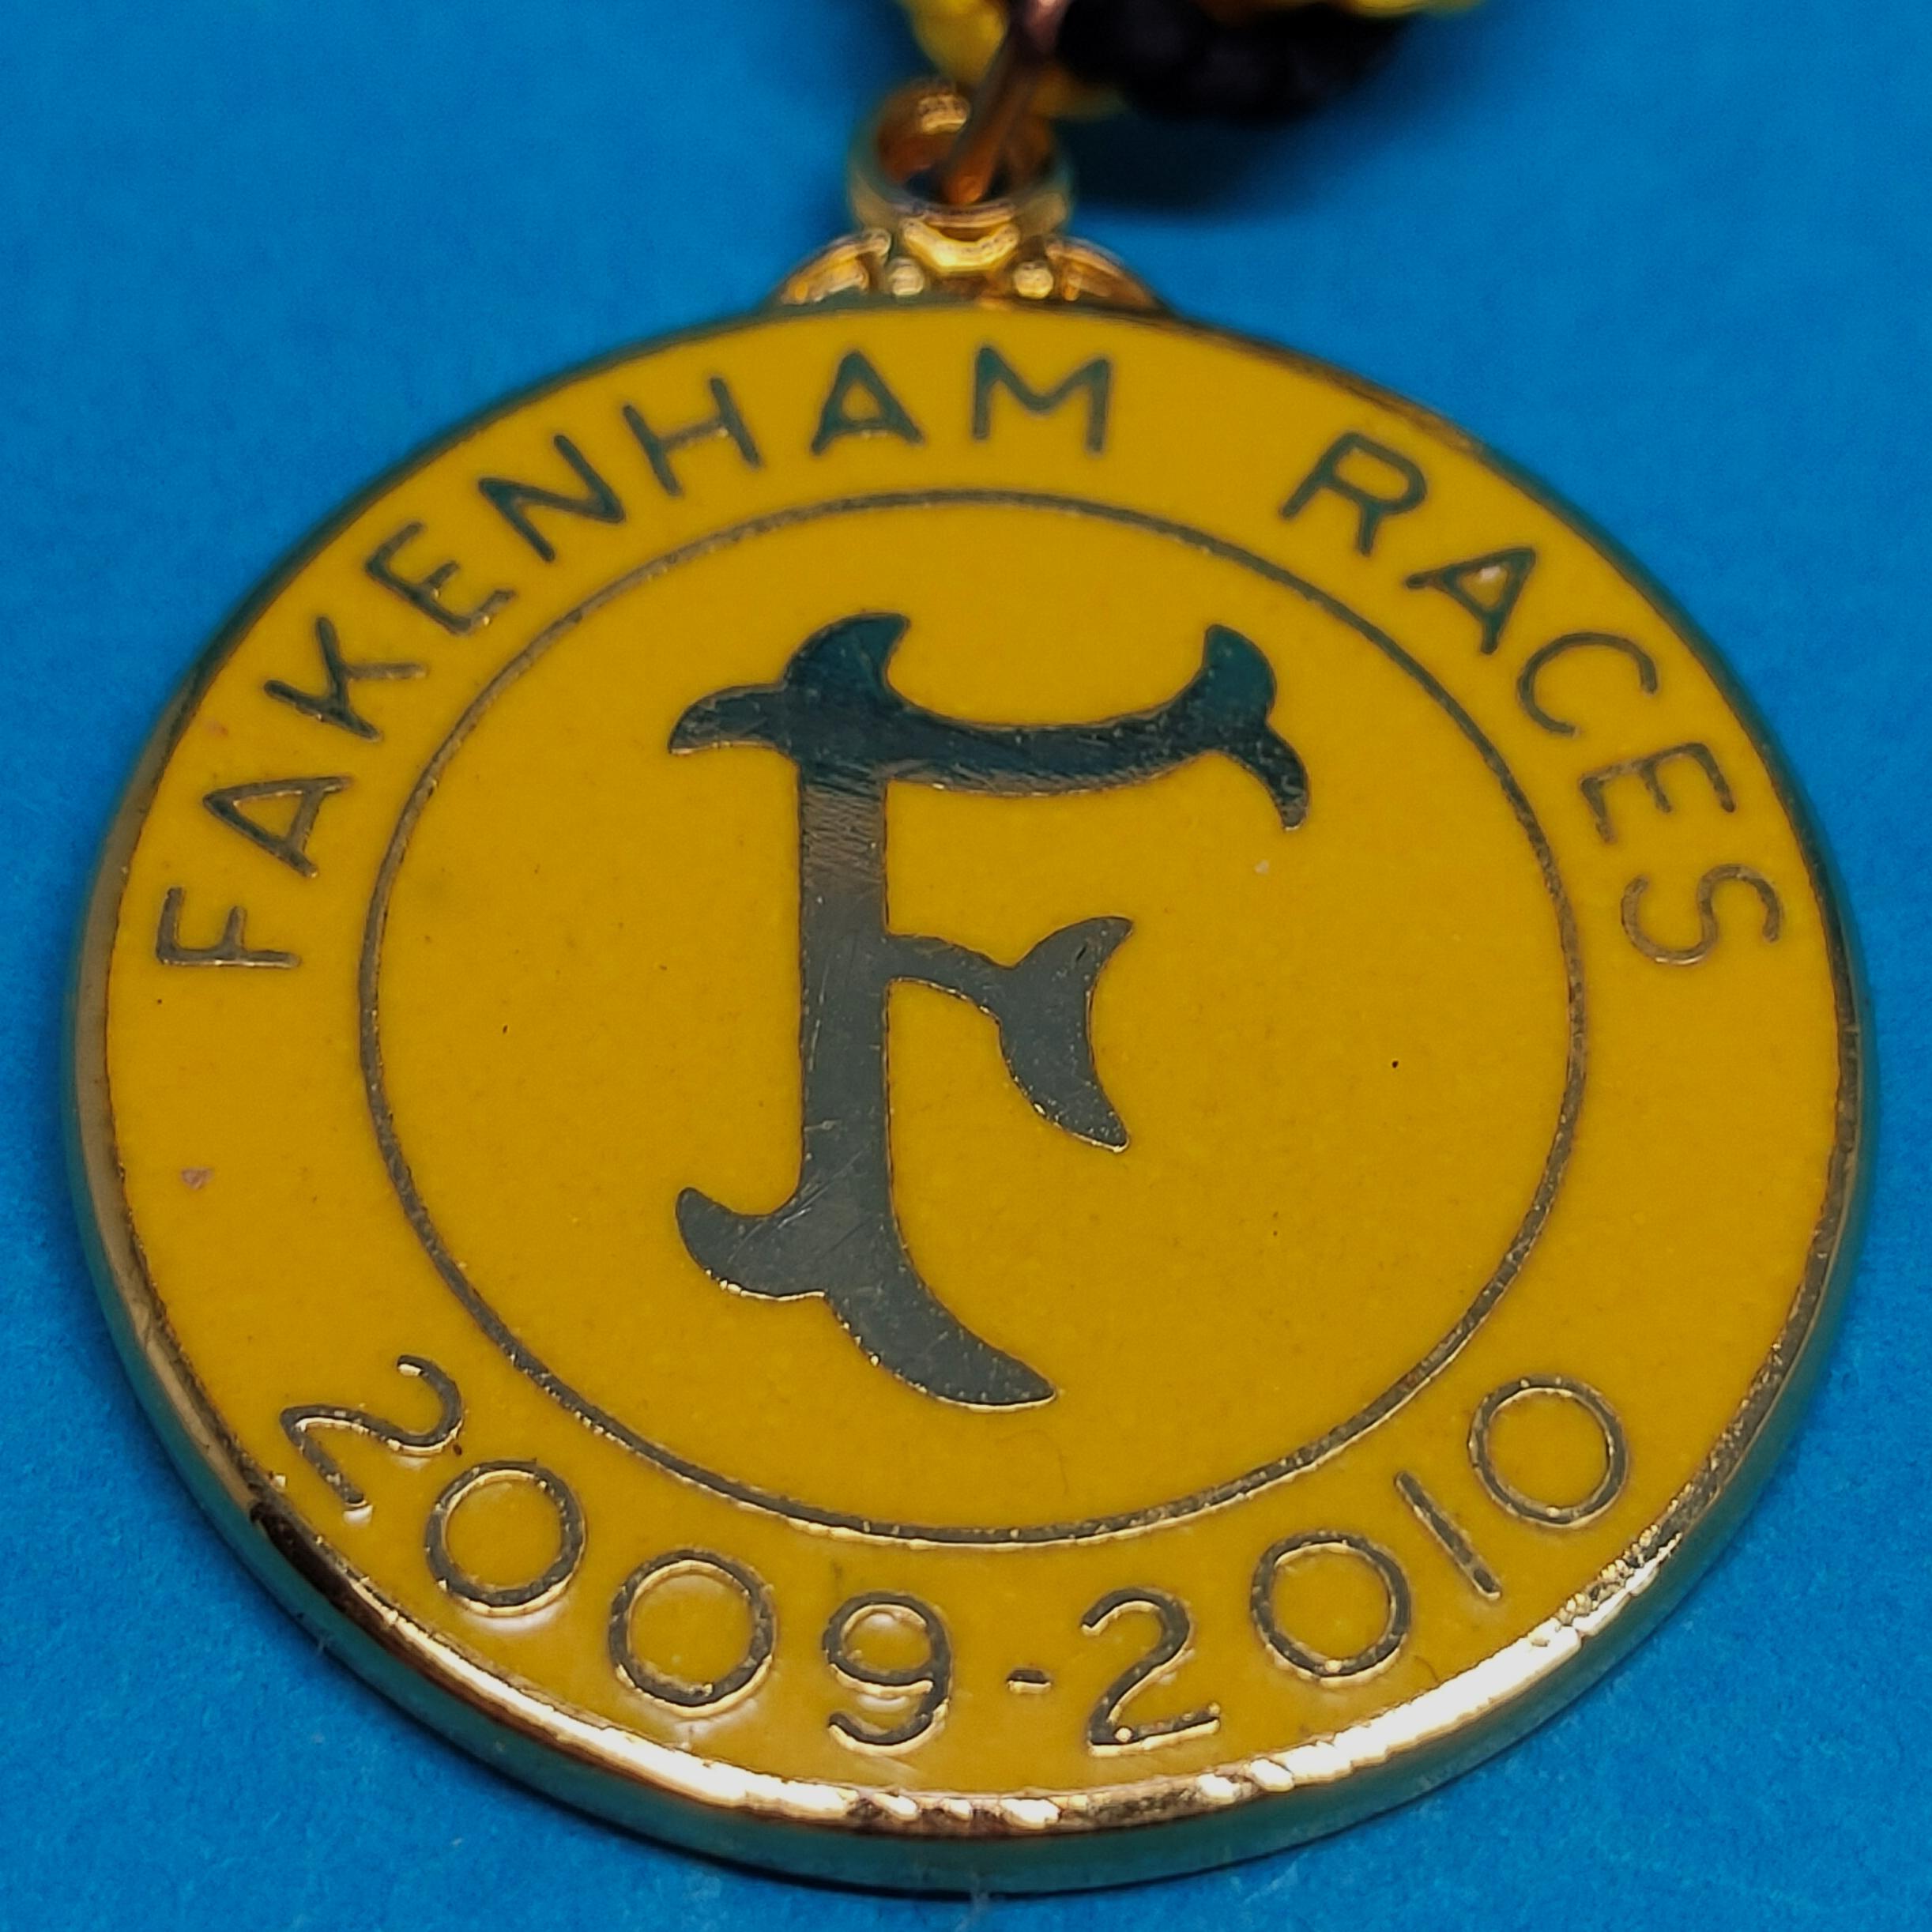 Fakenham 2009 / 2010